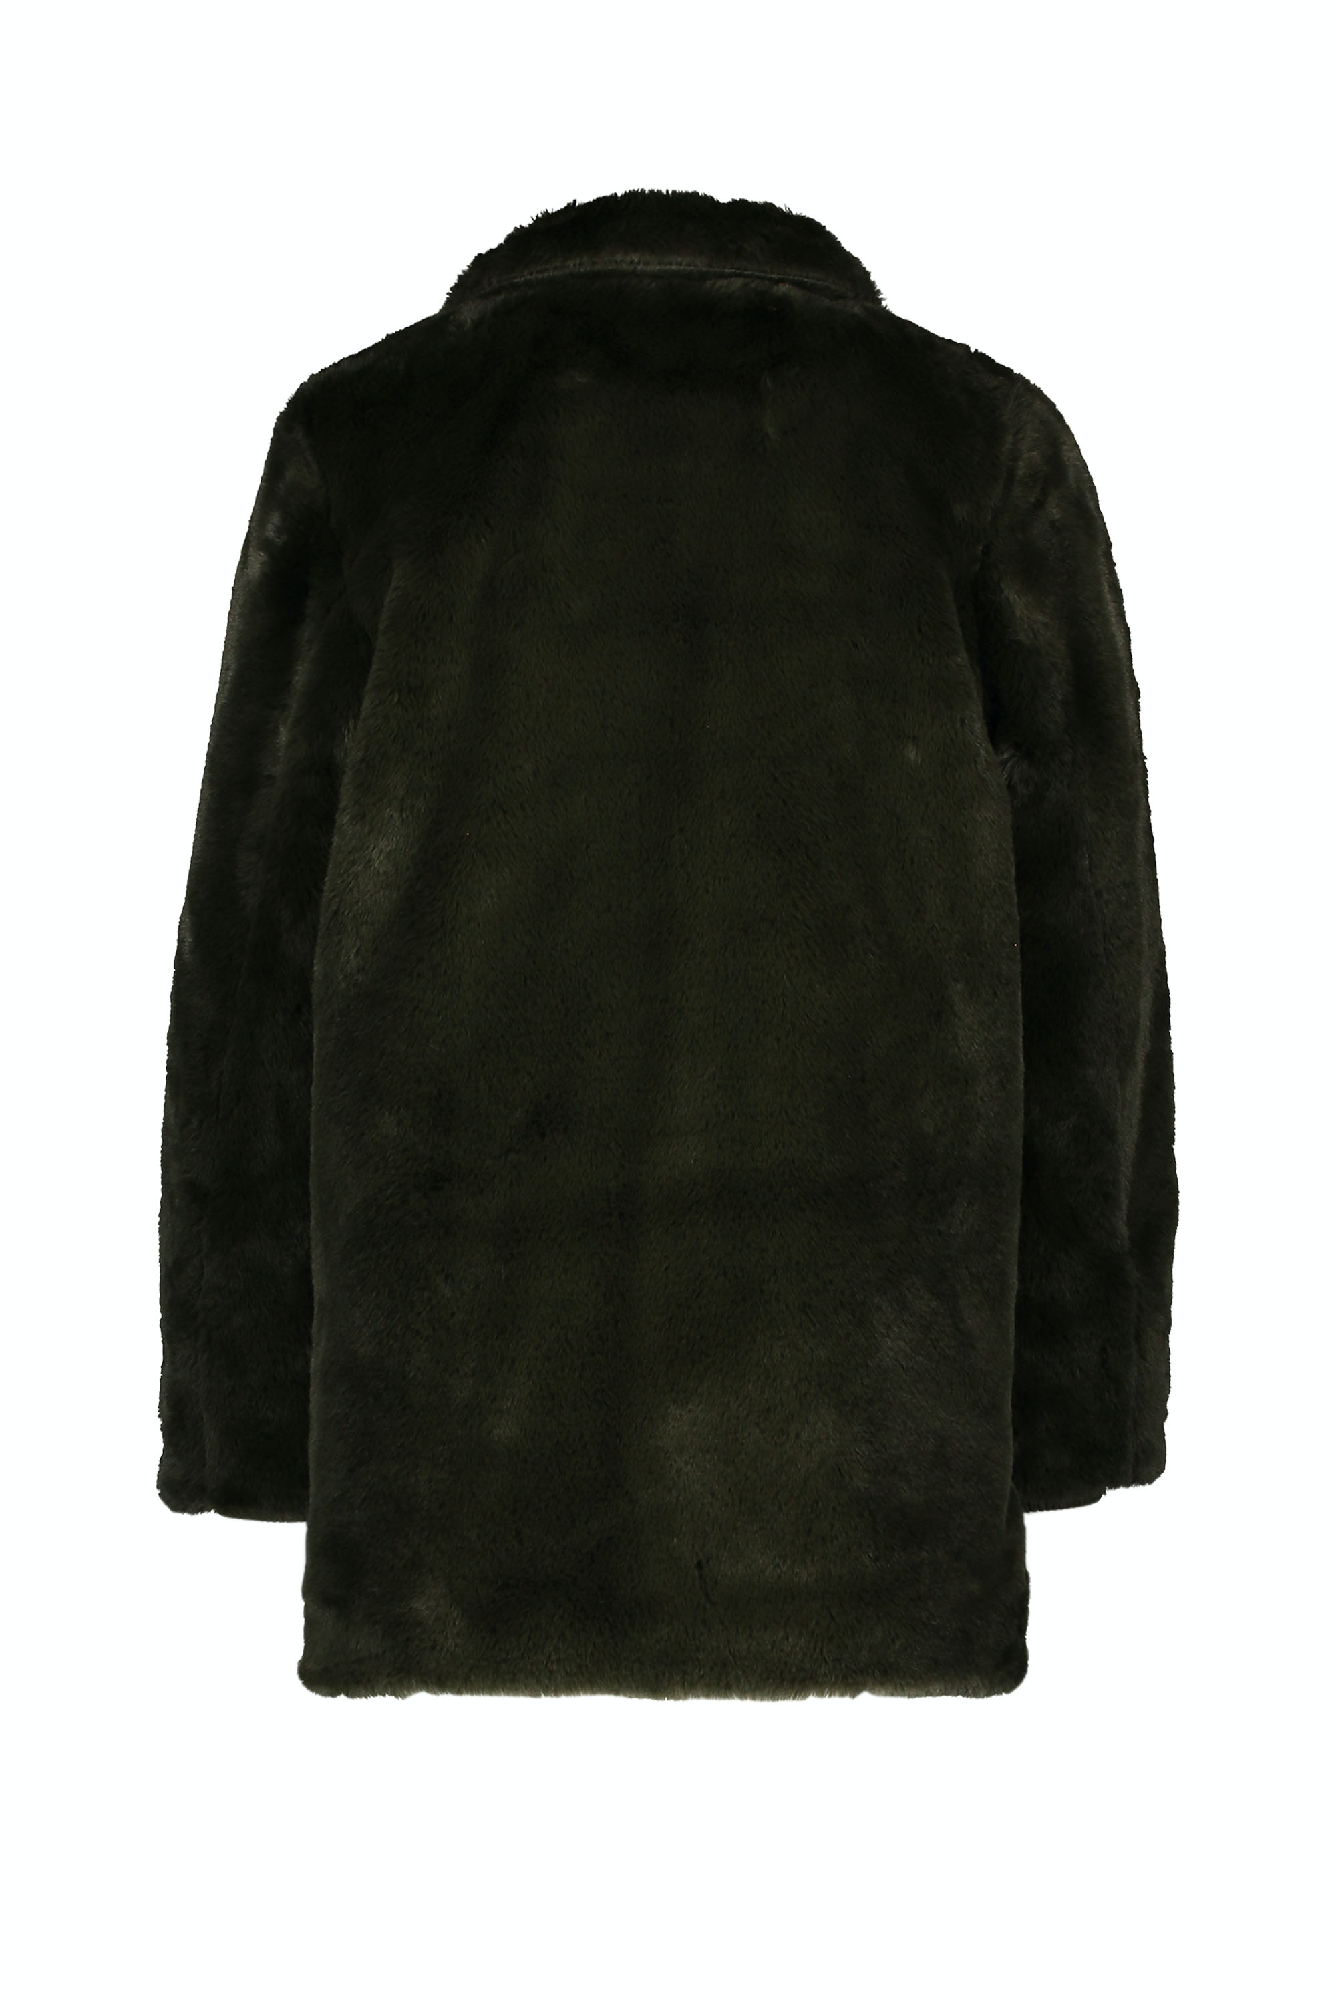 Meisjes Moodstreet Fake Fur Coat van Moodstreet in de kleur Beige in maat 146-152.